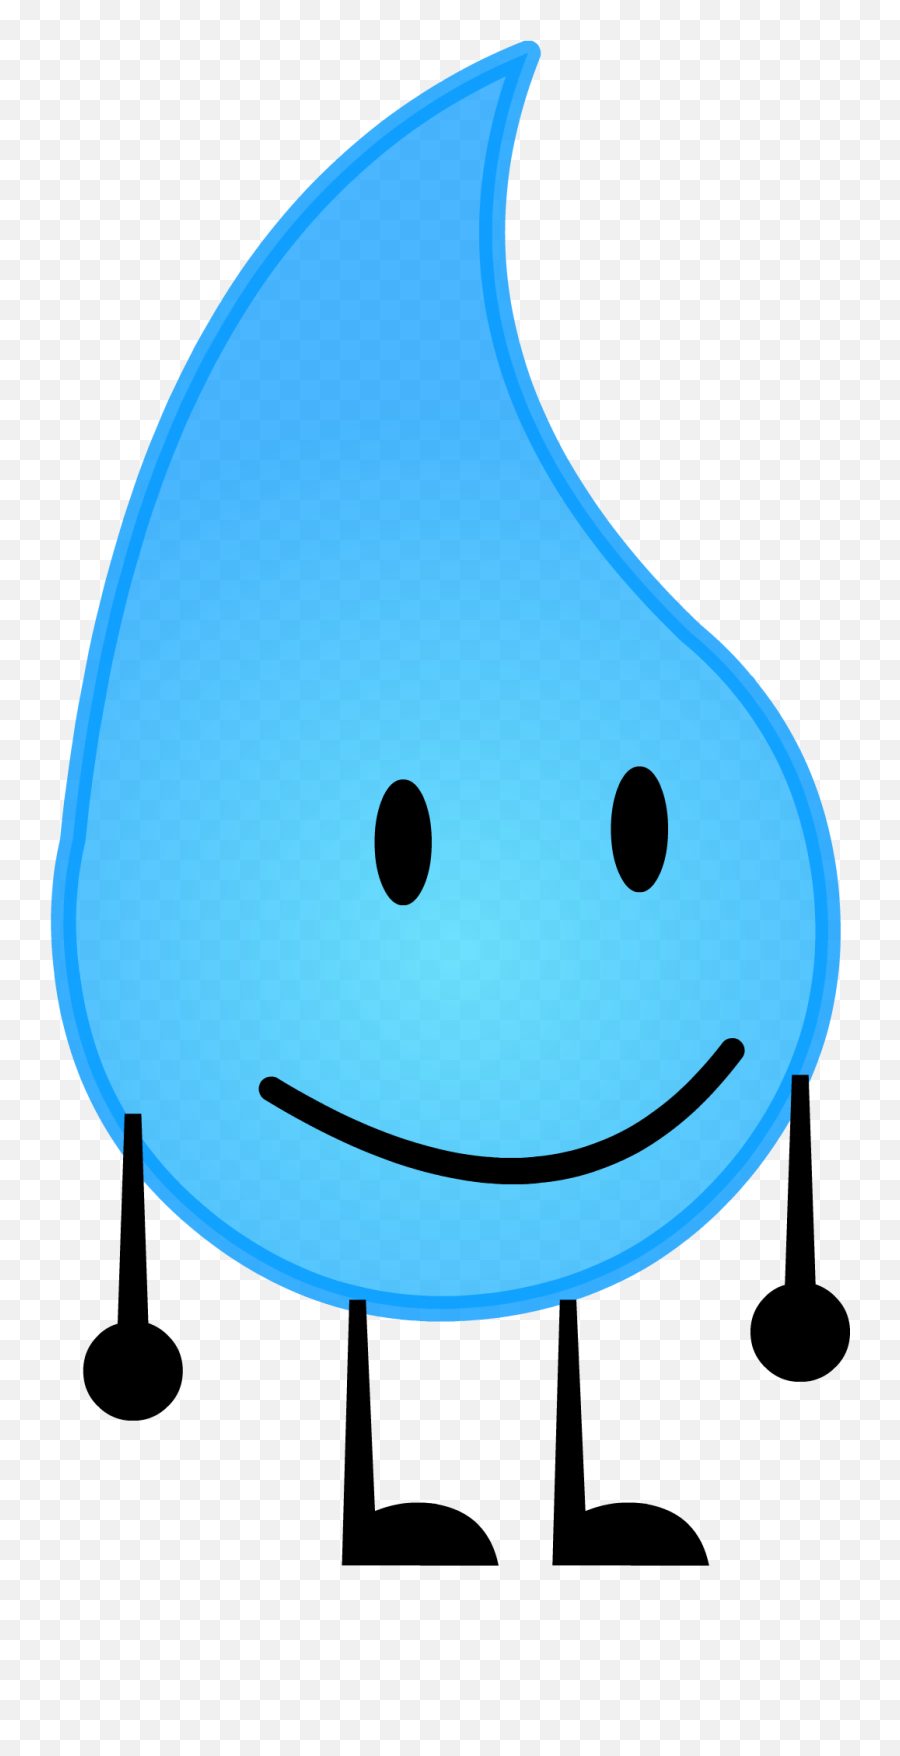 Teardrop - Teardrop Bfdi Characters Emoji,Teardrop Showing Emotions Freeze